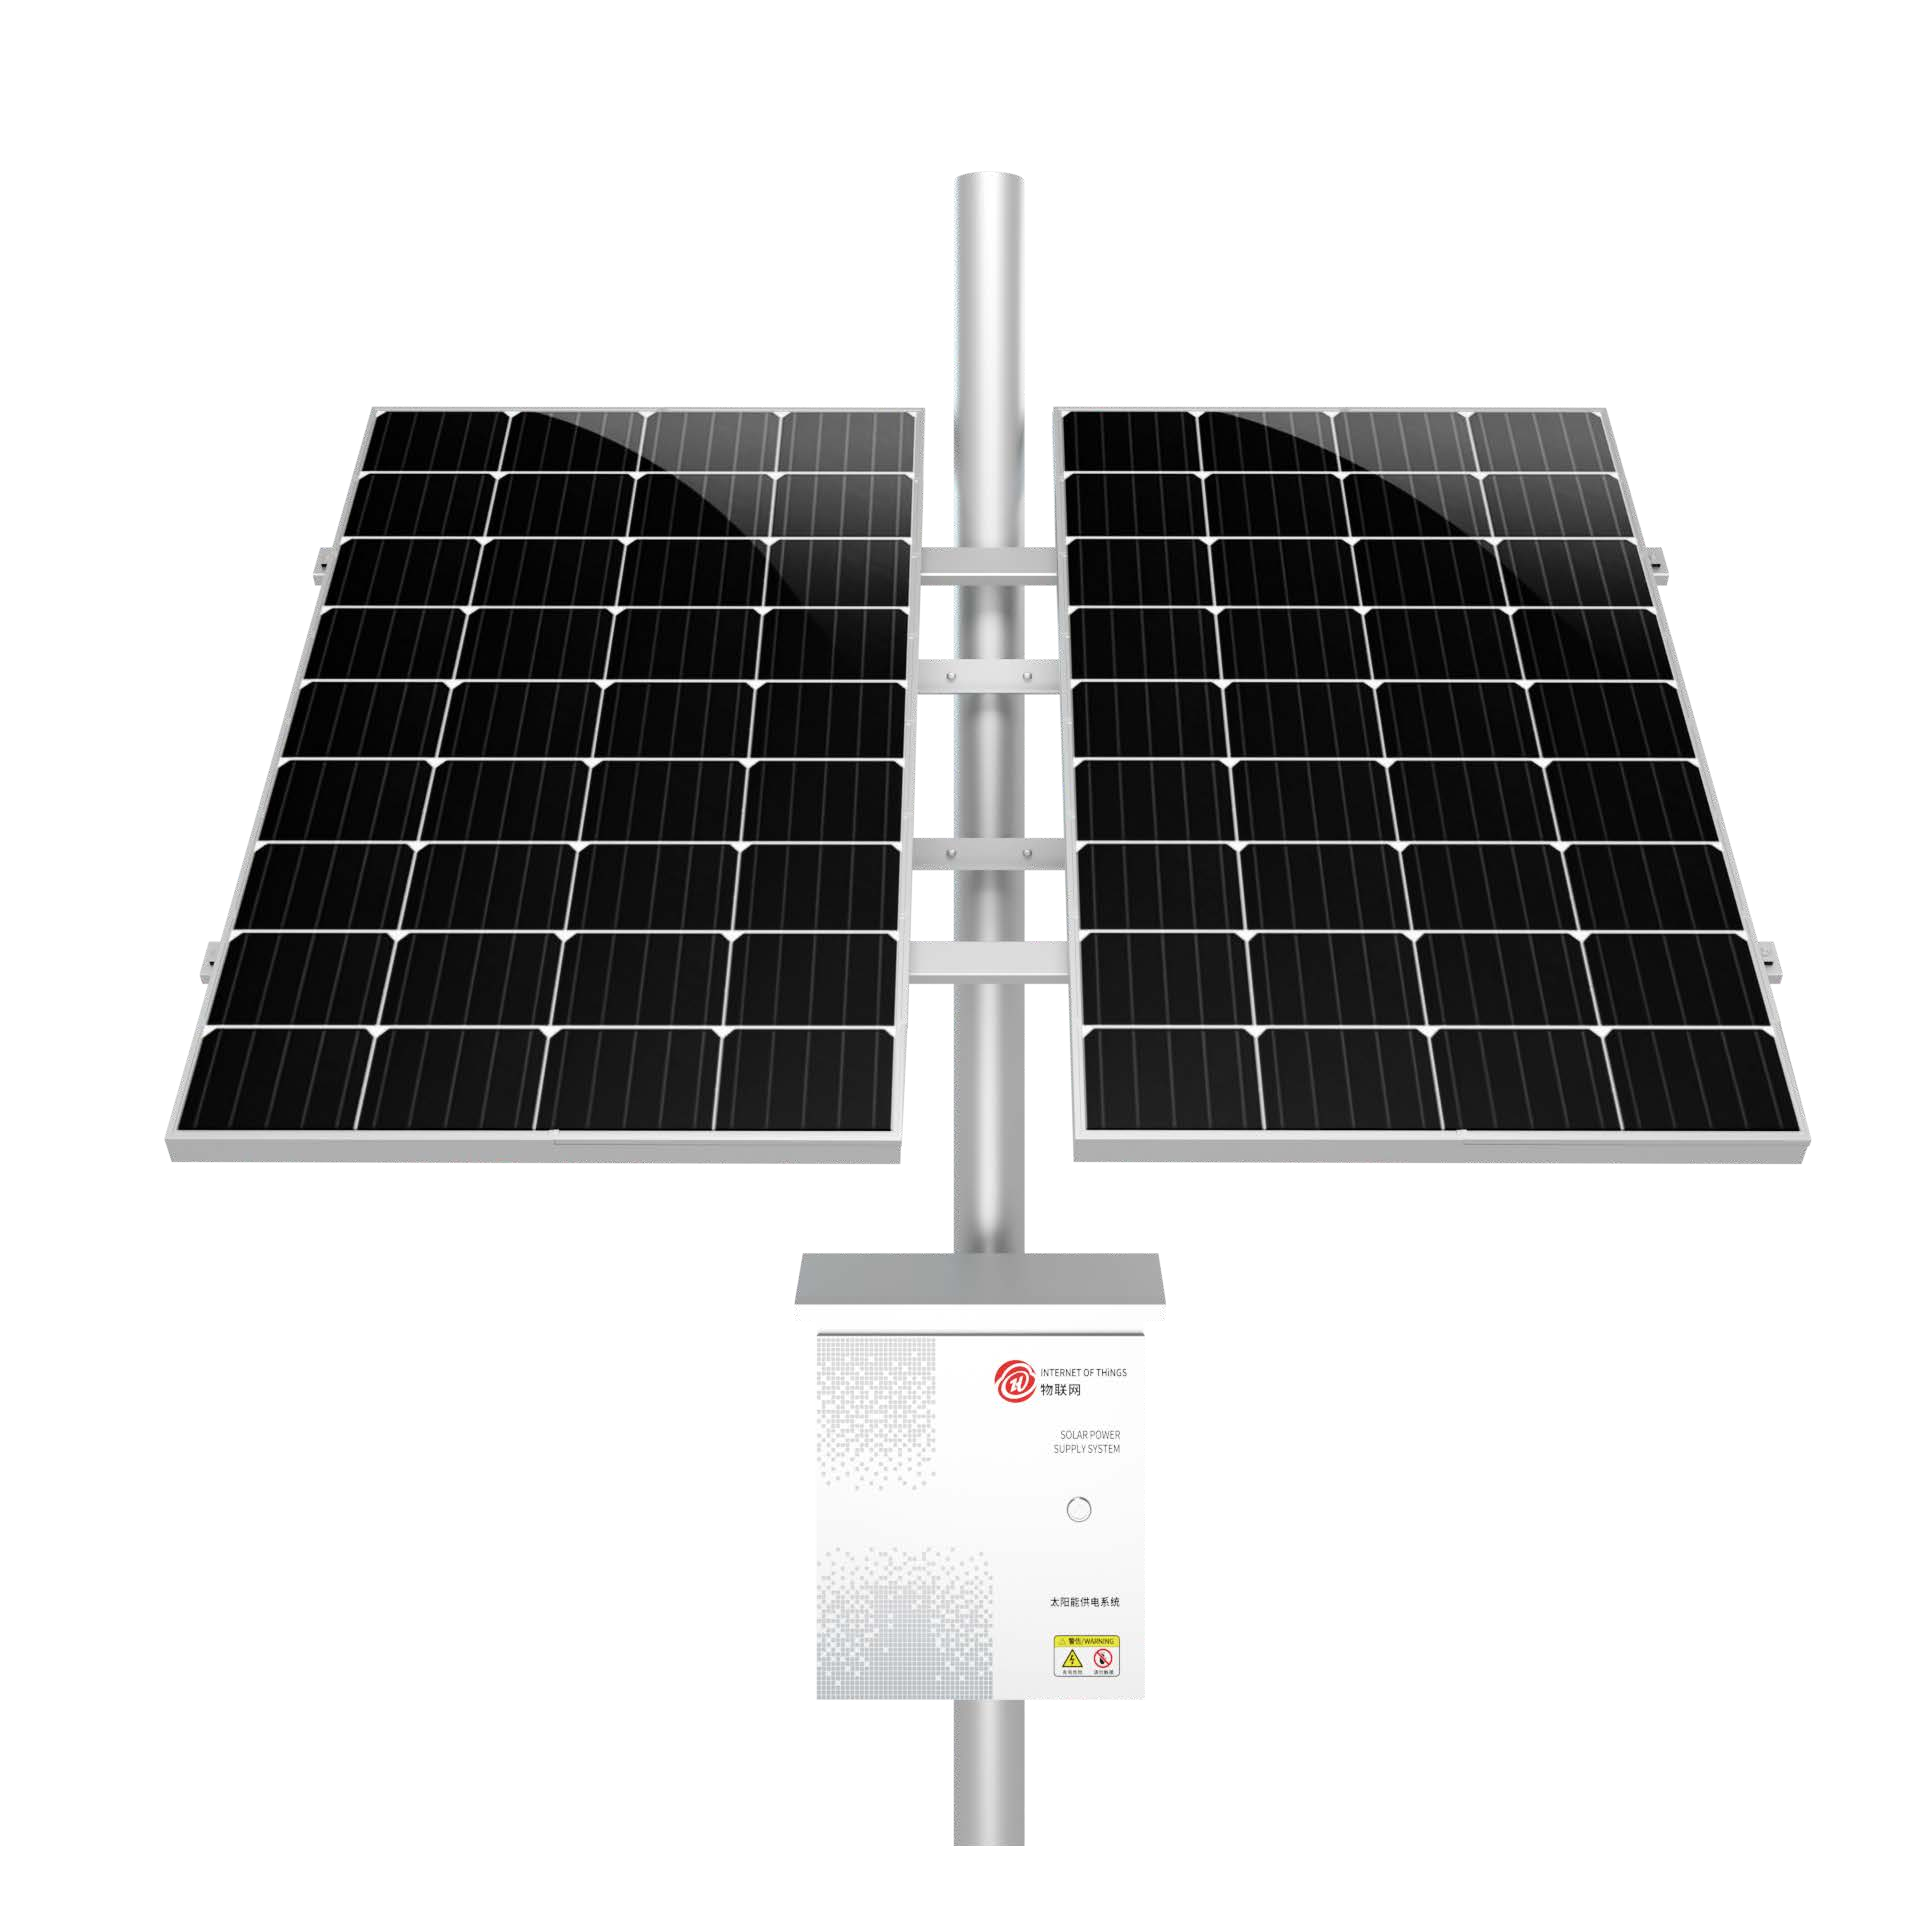 驰秒CMP-240W130A太阳能监控供电系统